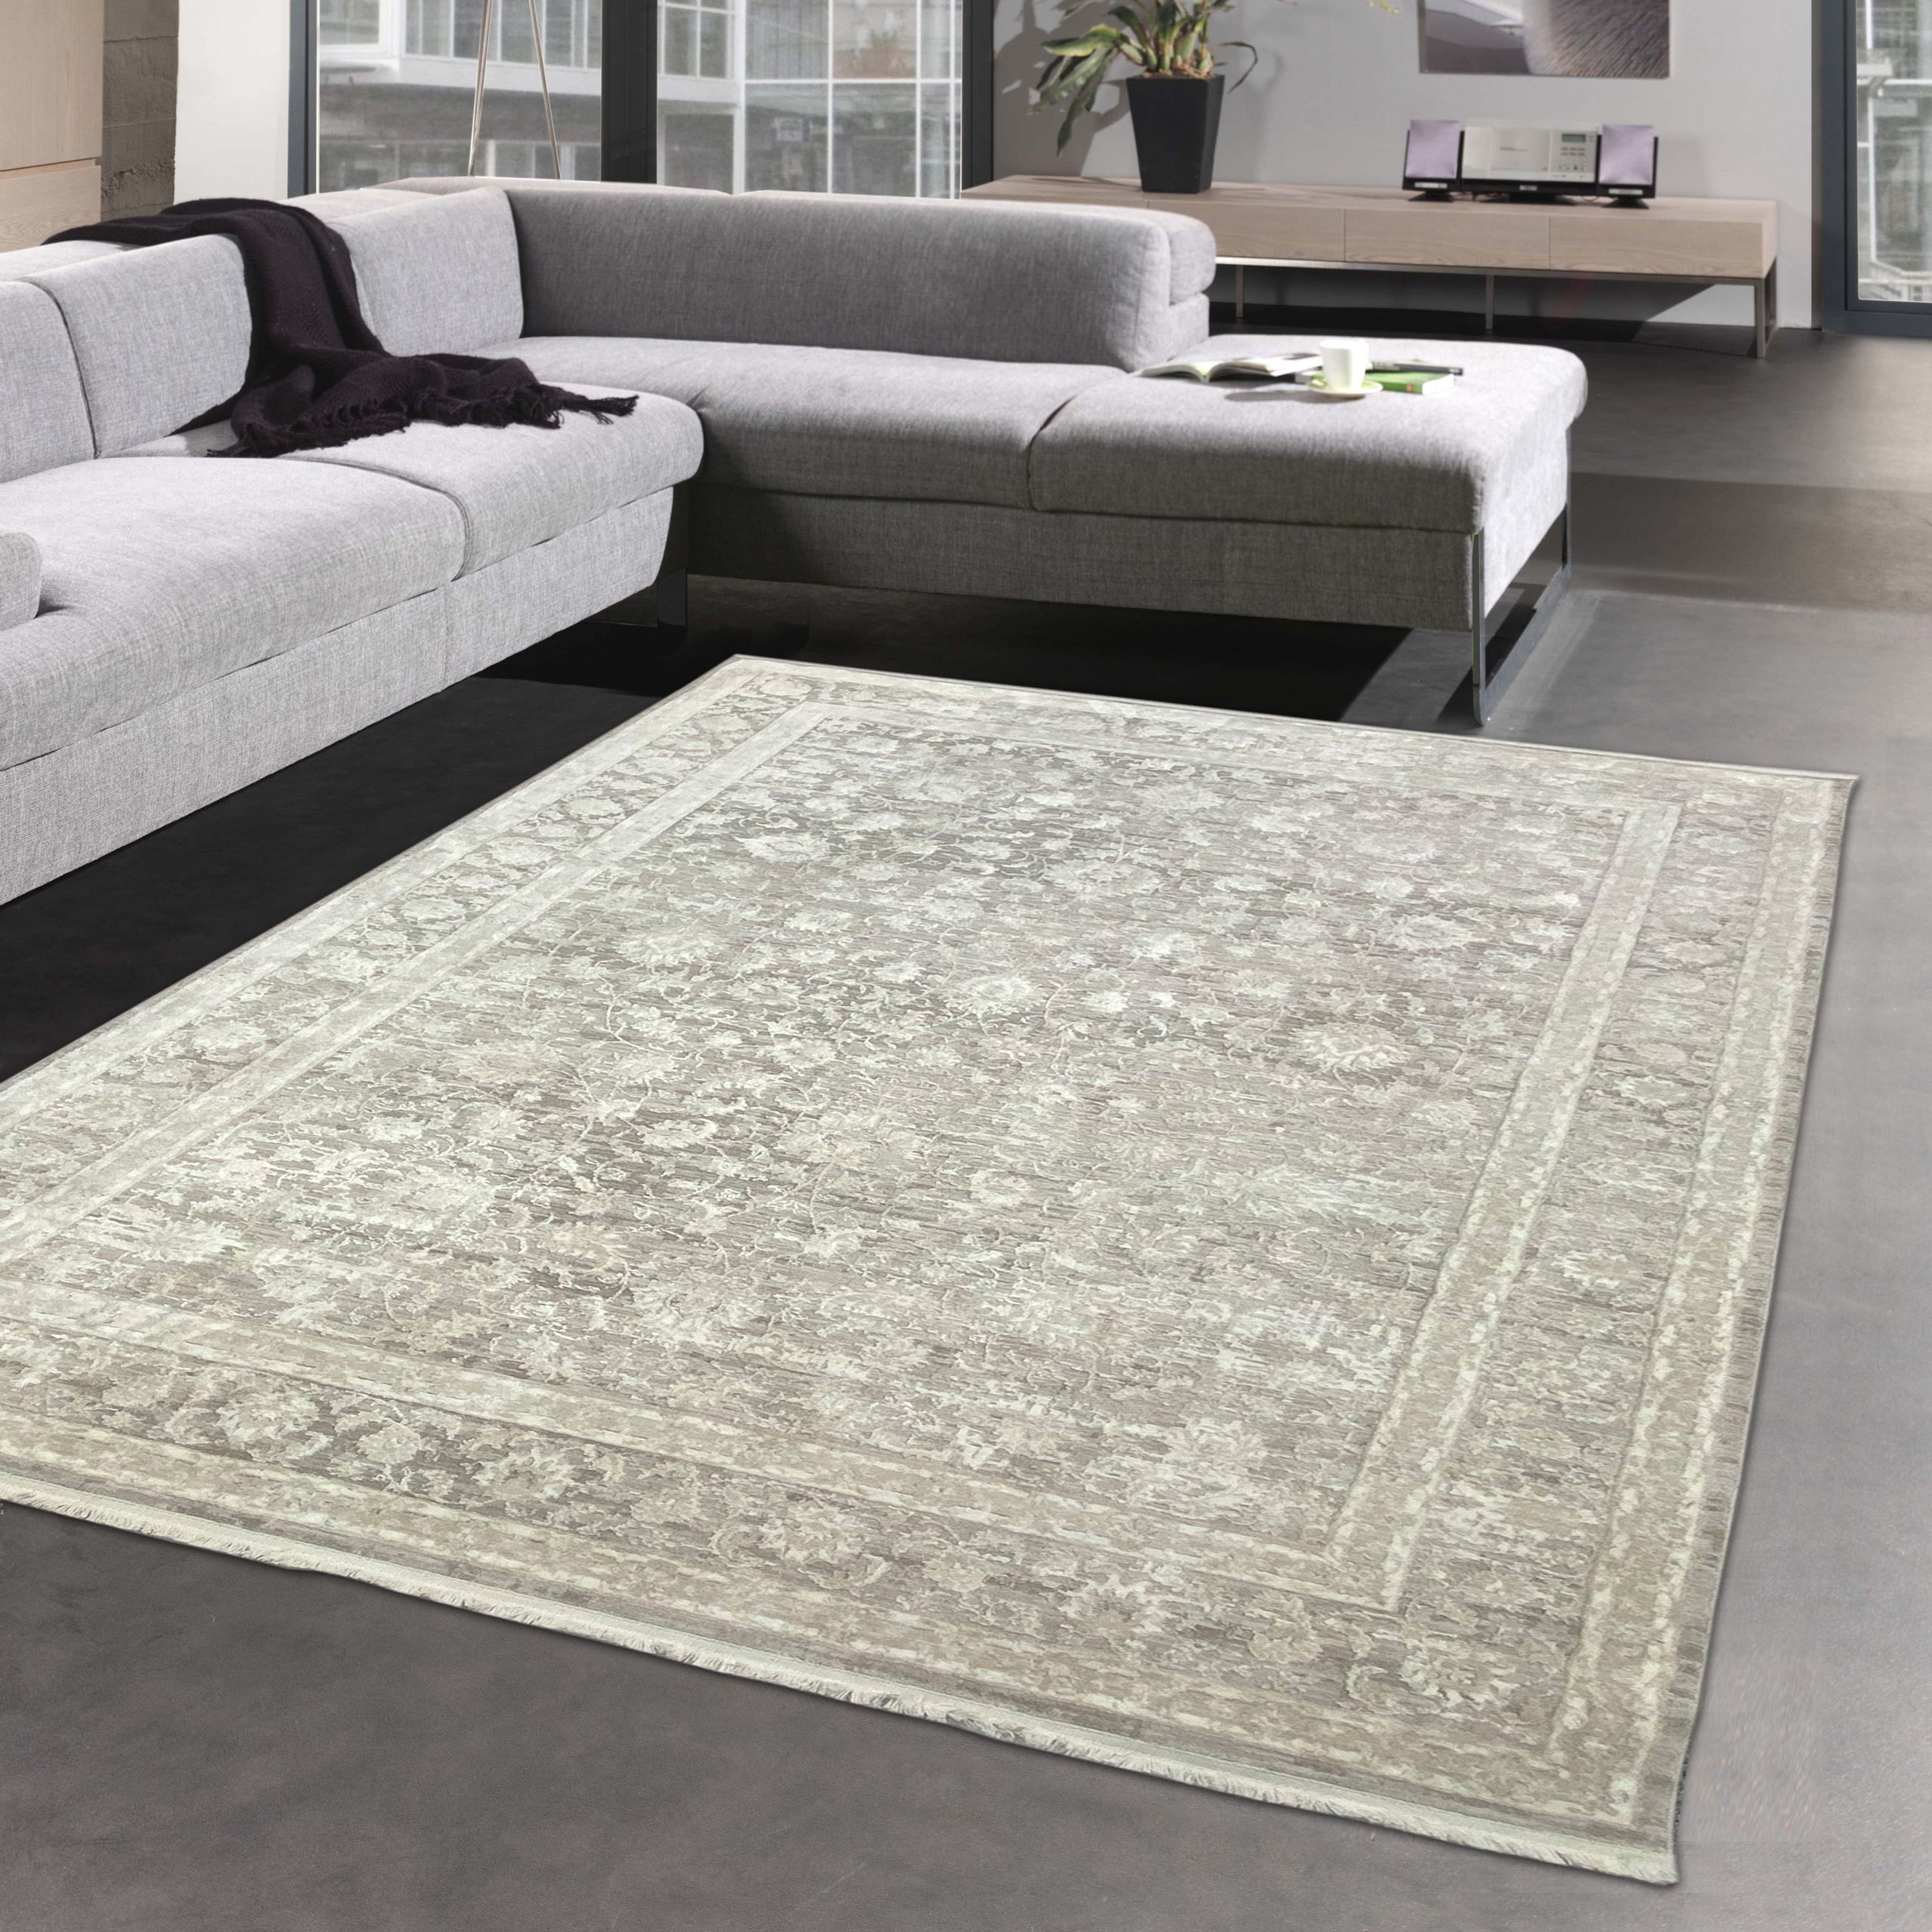 Orientalische Teppiche guter Qualität günstig | CARPETIA online kaufen